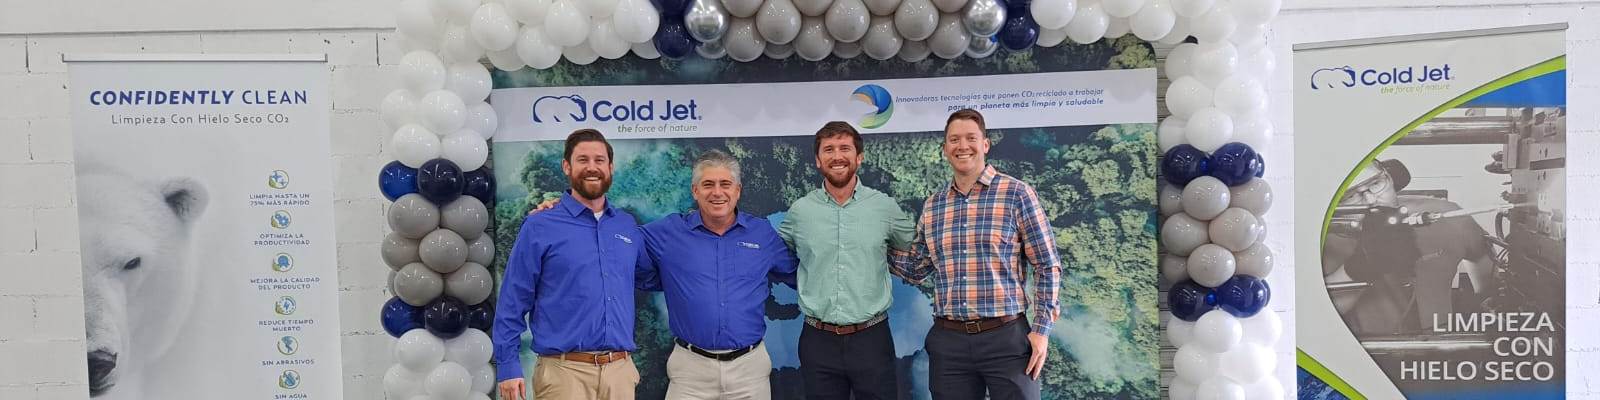 Durante su Open House, Cold Jet recibió en sus instalaciones a clientes y socios comerciales.